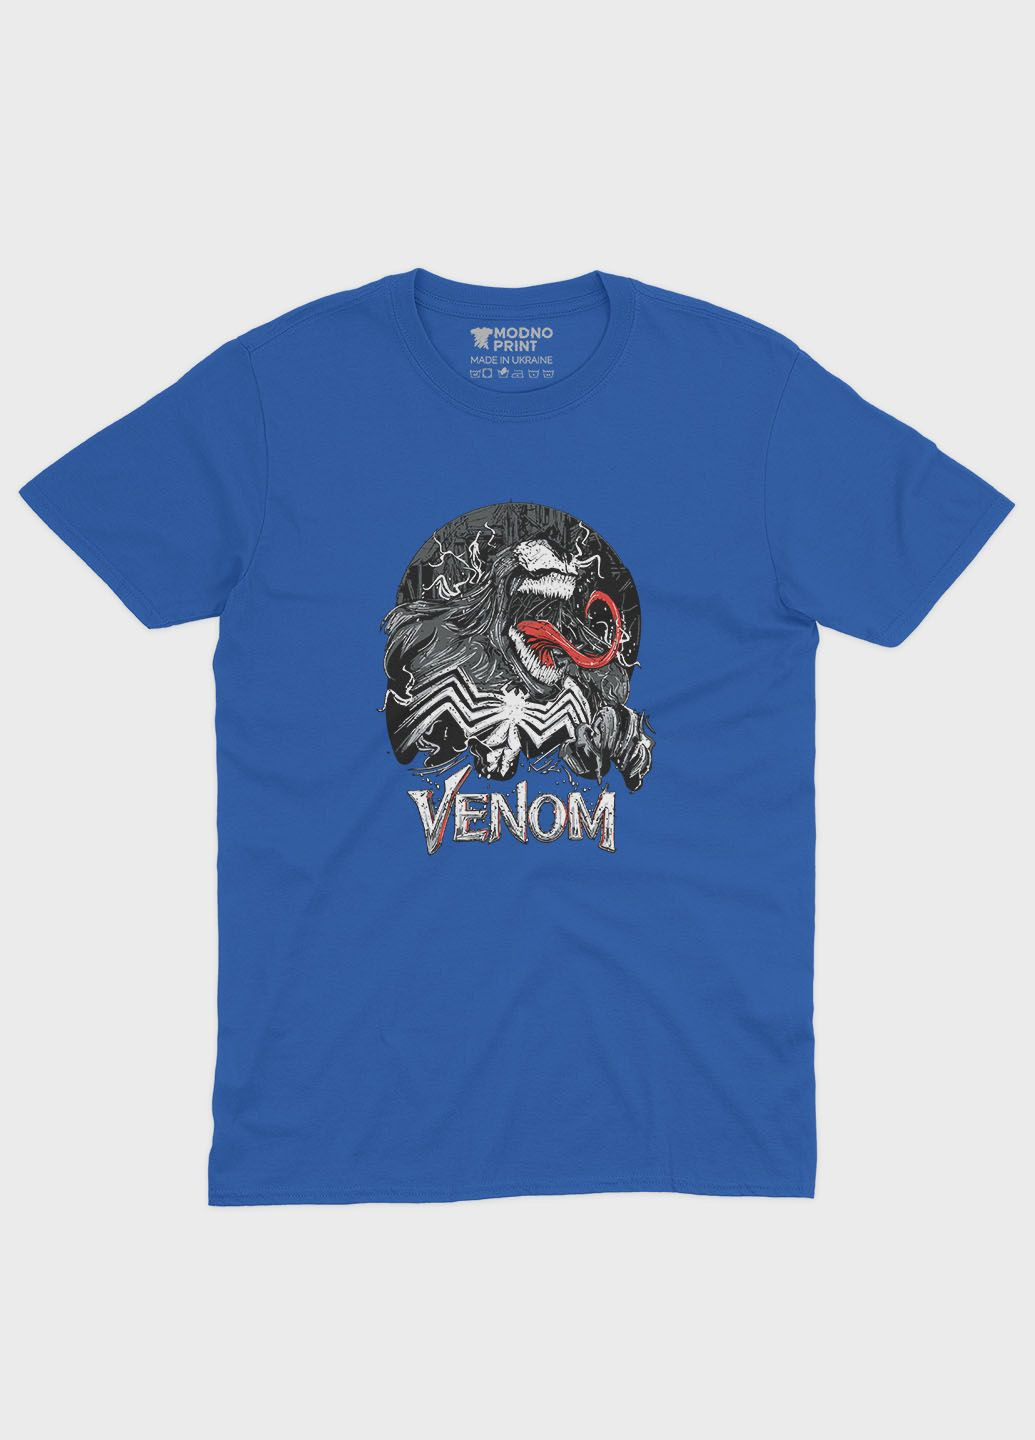 Синяя демисезонная футболка для мальчика с принтом супервора - веном (ts001-1-brr-006-013-028-b) Modno